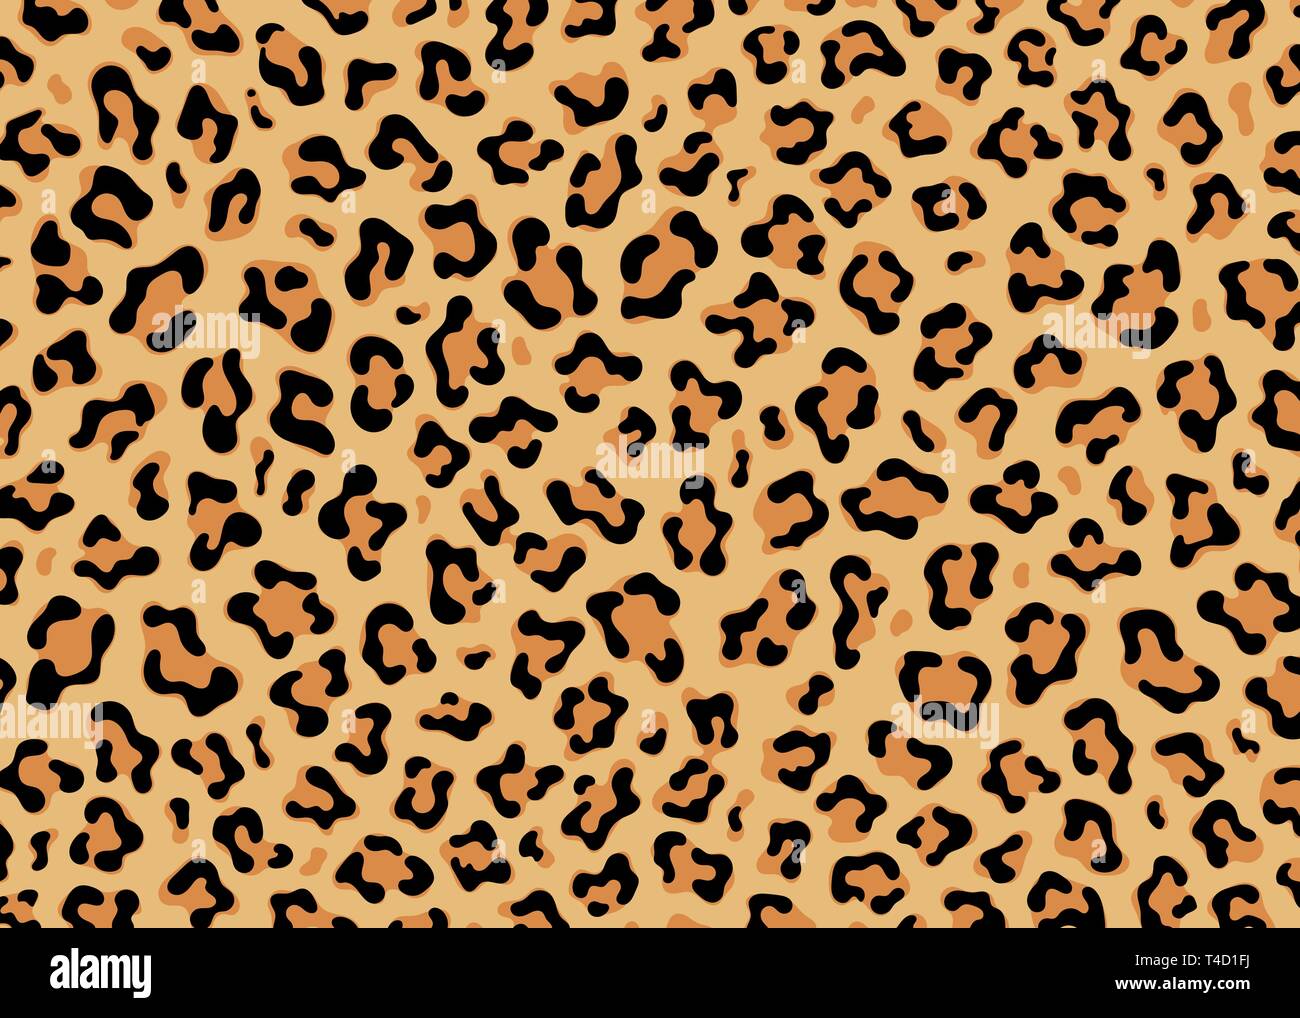 Einfache Leopard Muster Design. Tier drucken Vektor-illustration Hintergrund. Wildlife Fell haut Design Illustration für Web, Wohnkultur, Mode, Stock Vektor